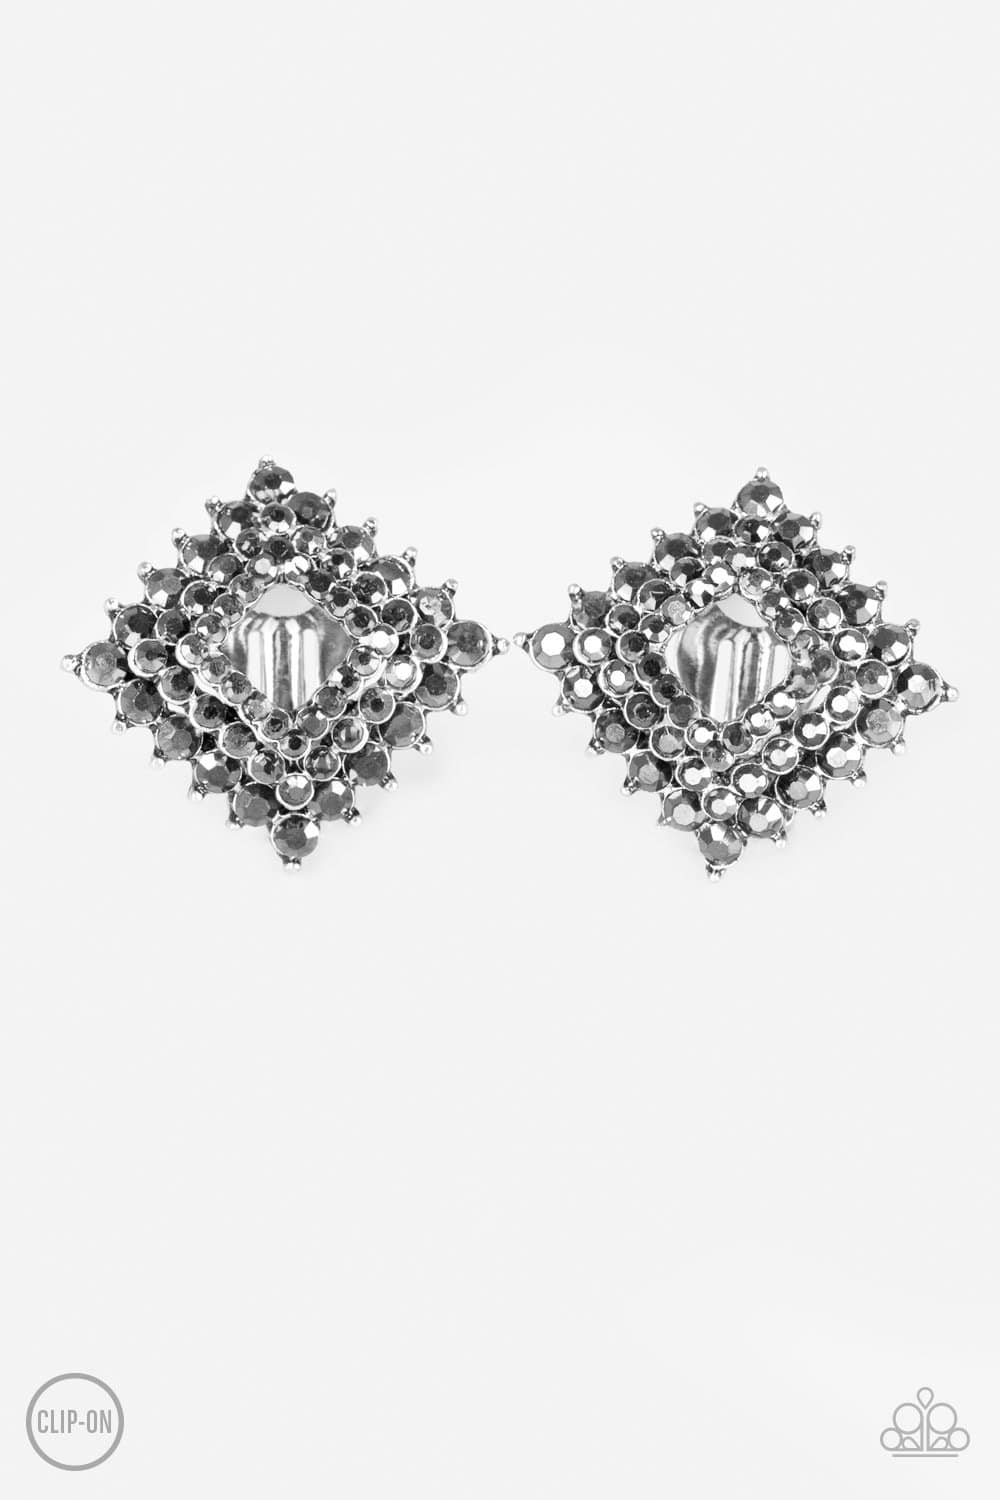 D13 - Kensington Keepsake Silver Clip-On Earrings by Paparazzi Accessories on Fancy5Fashion.com